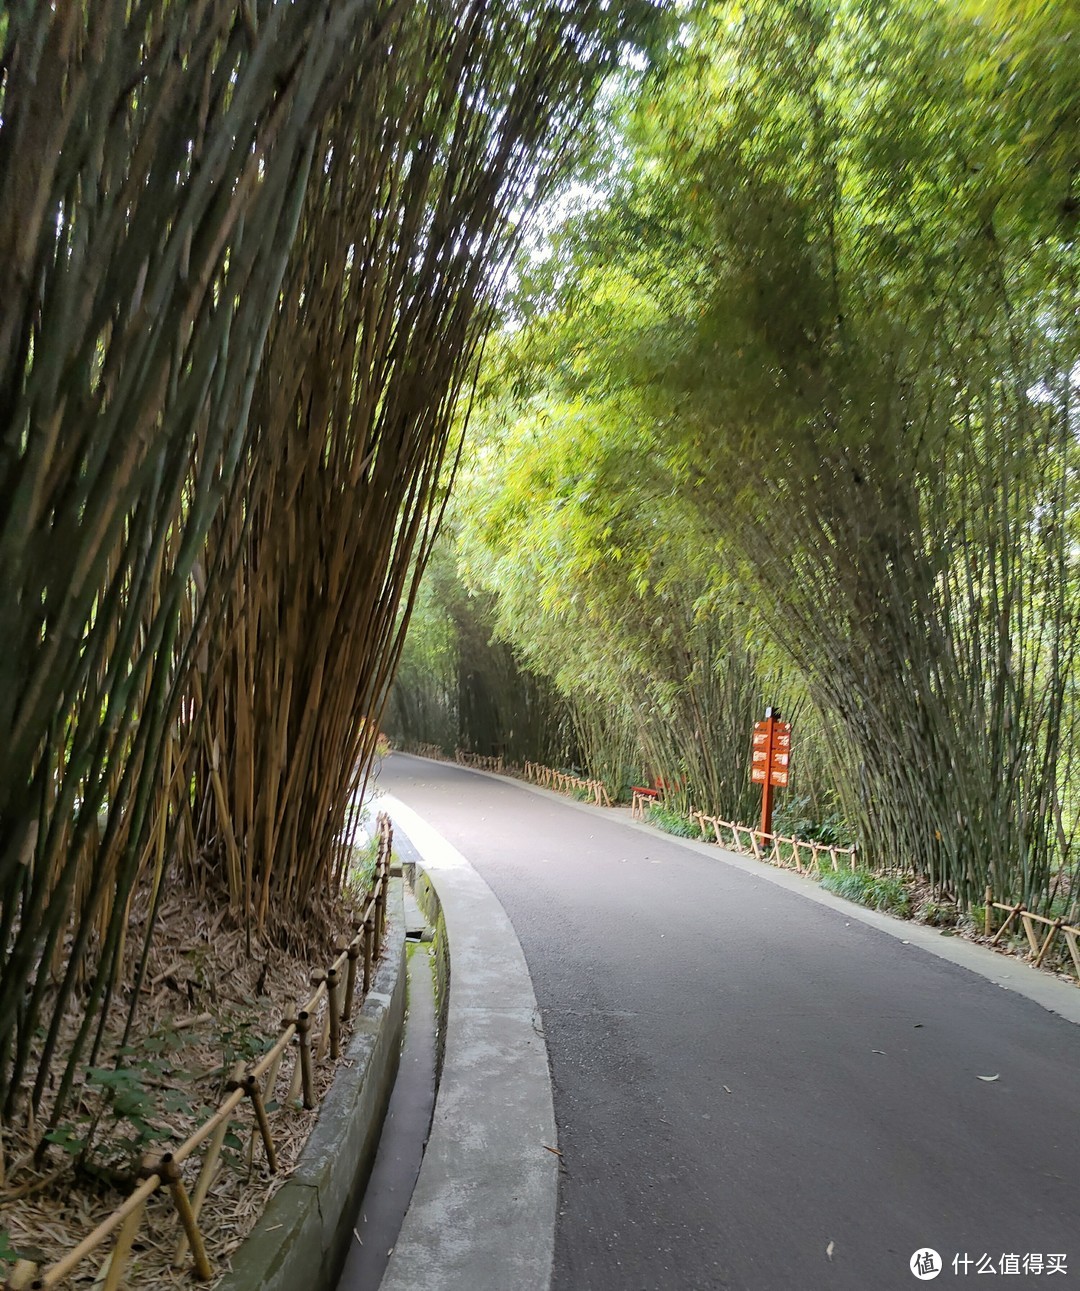 进入熊猫基地之后 路两侧都是竹林